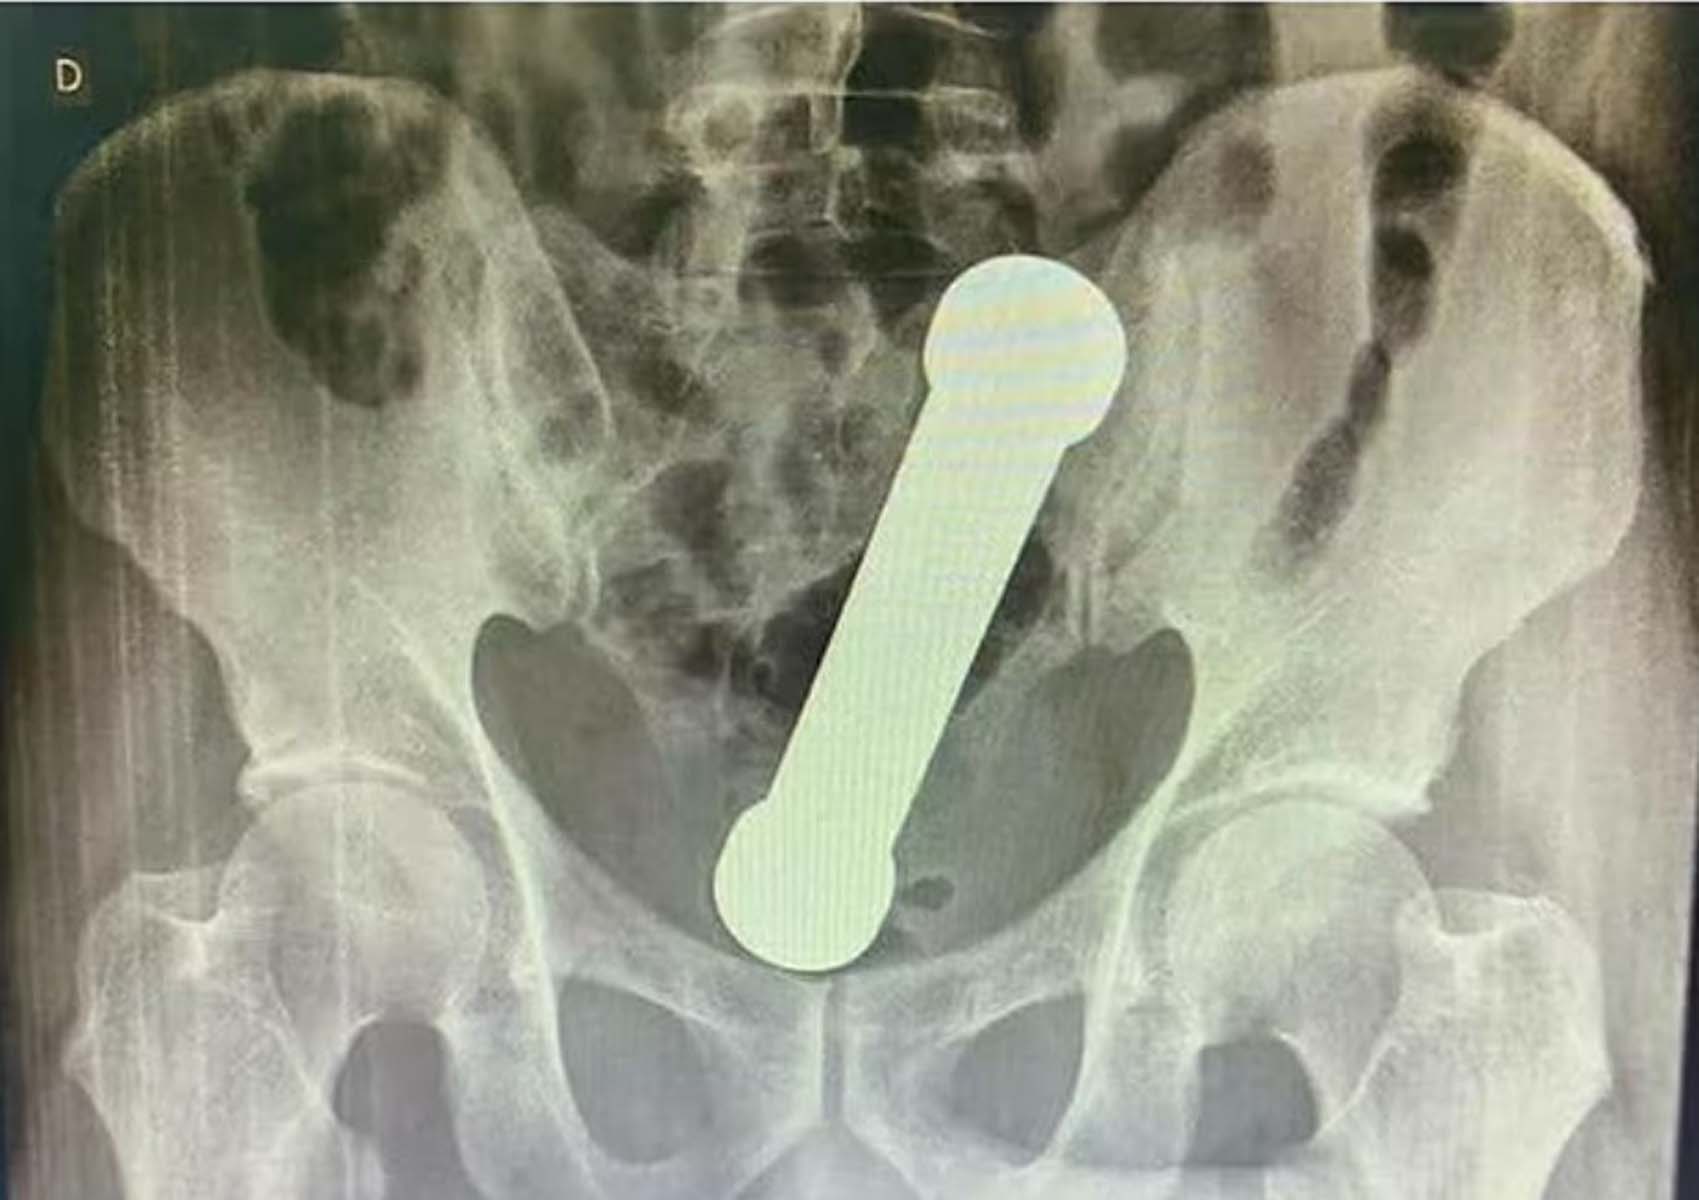 Röntgene bakan doktorlar gördüklerine inanamadı! 54 yaşındaki adam makatına 2 kg ağırlığında 20 cm dambıl soktu 